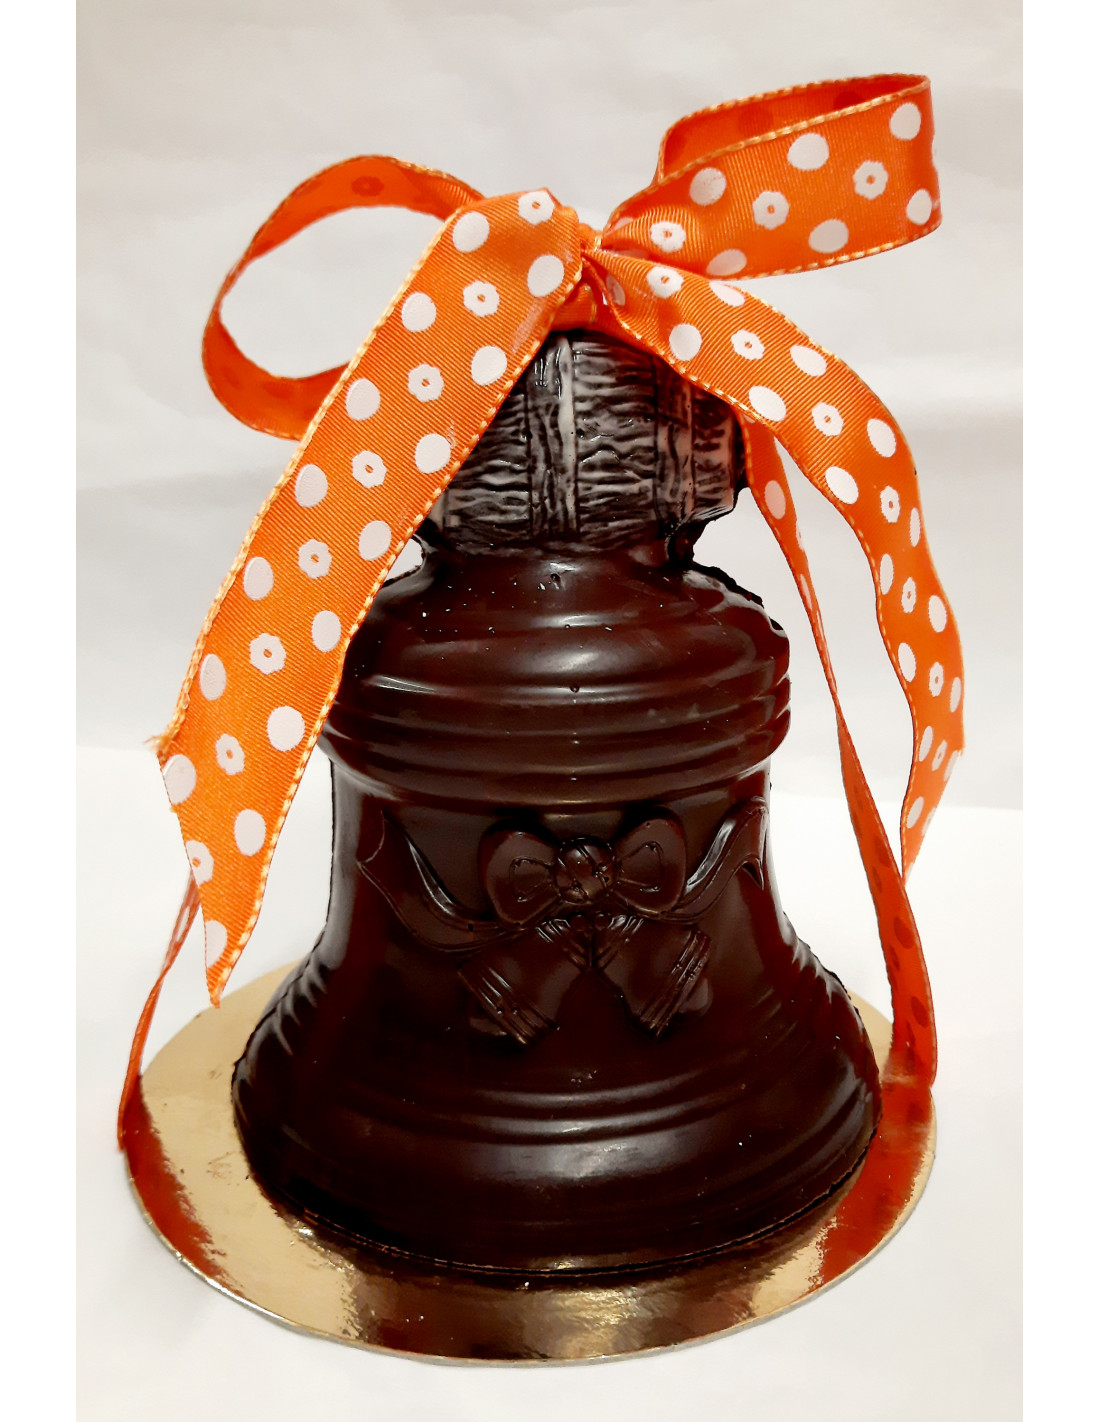 Grosse cloche garnie Chocolat noir- 300 g